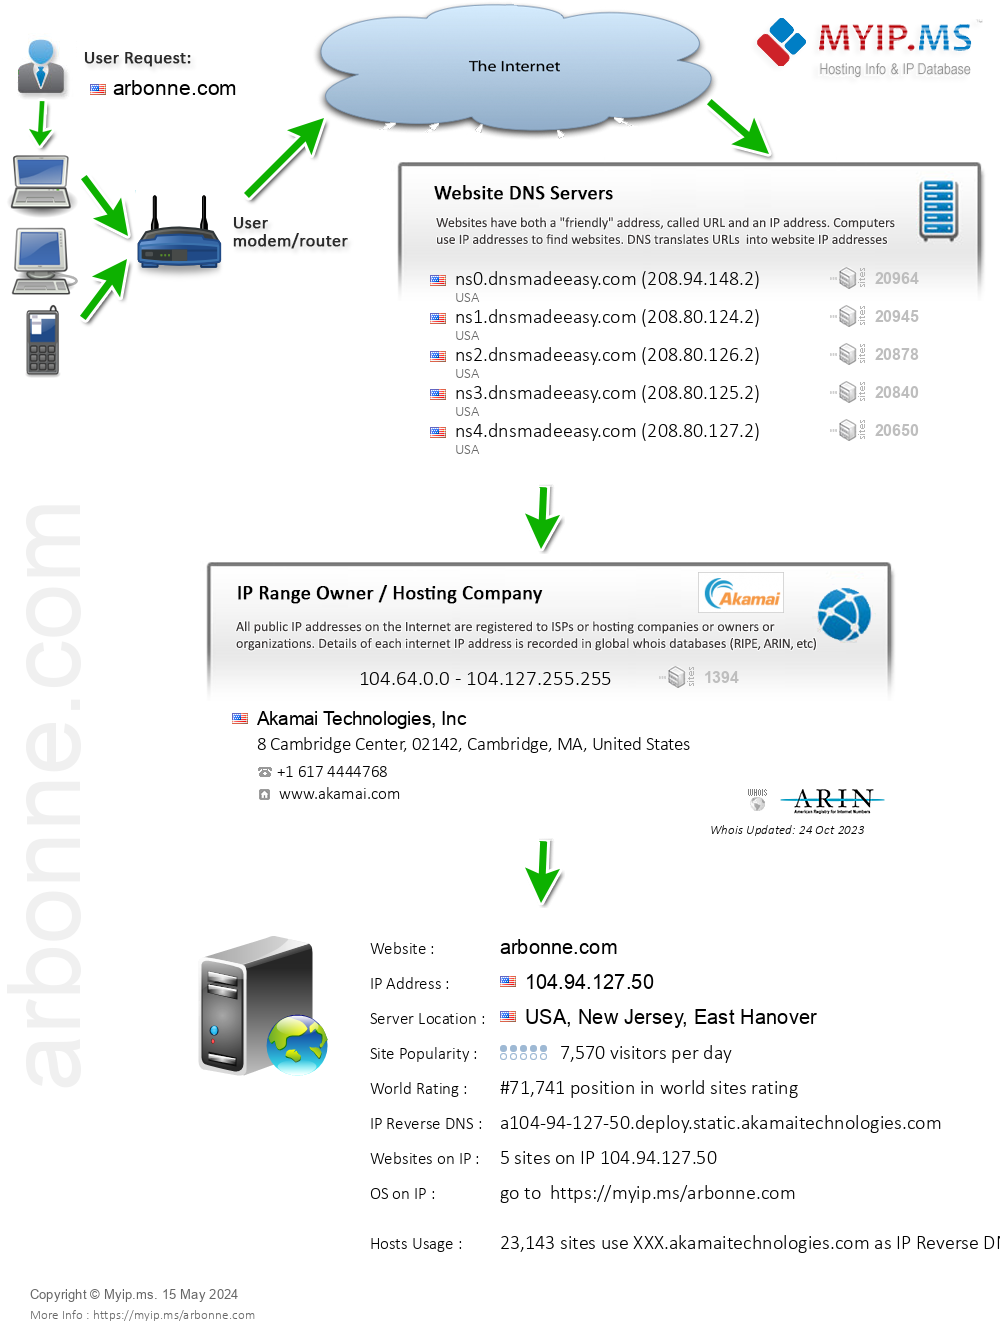 Arbonne.com - Website Hosting Visual IP Diagram